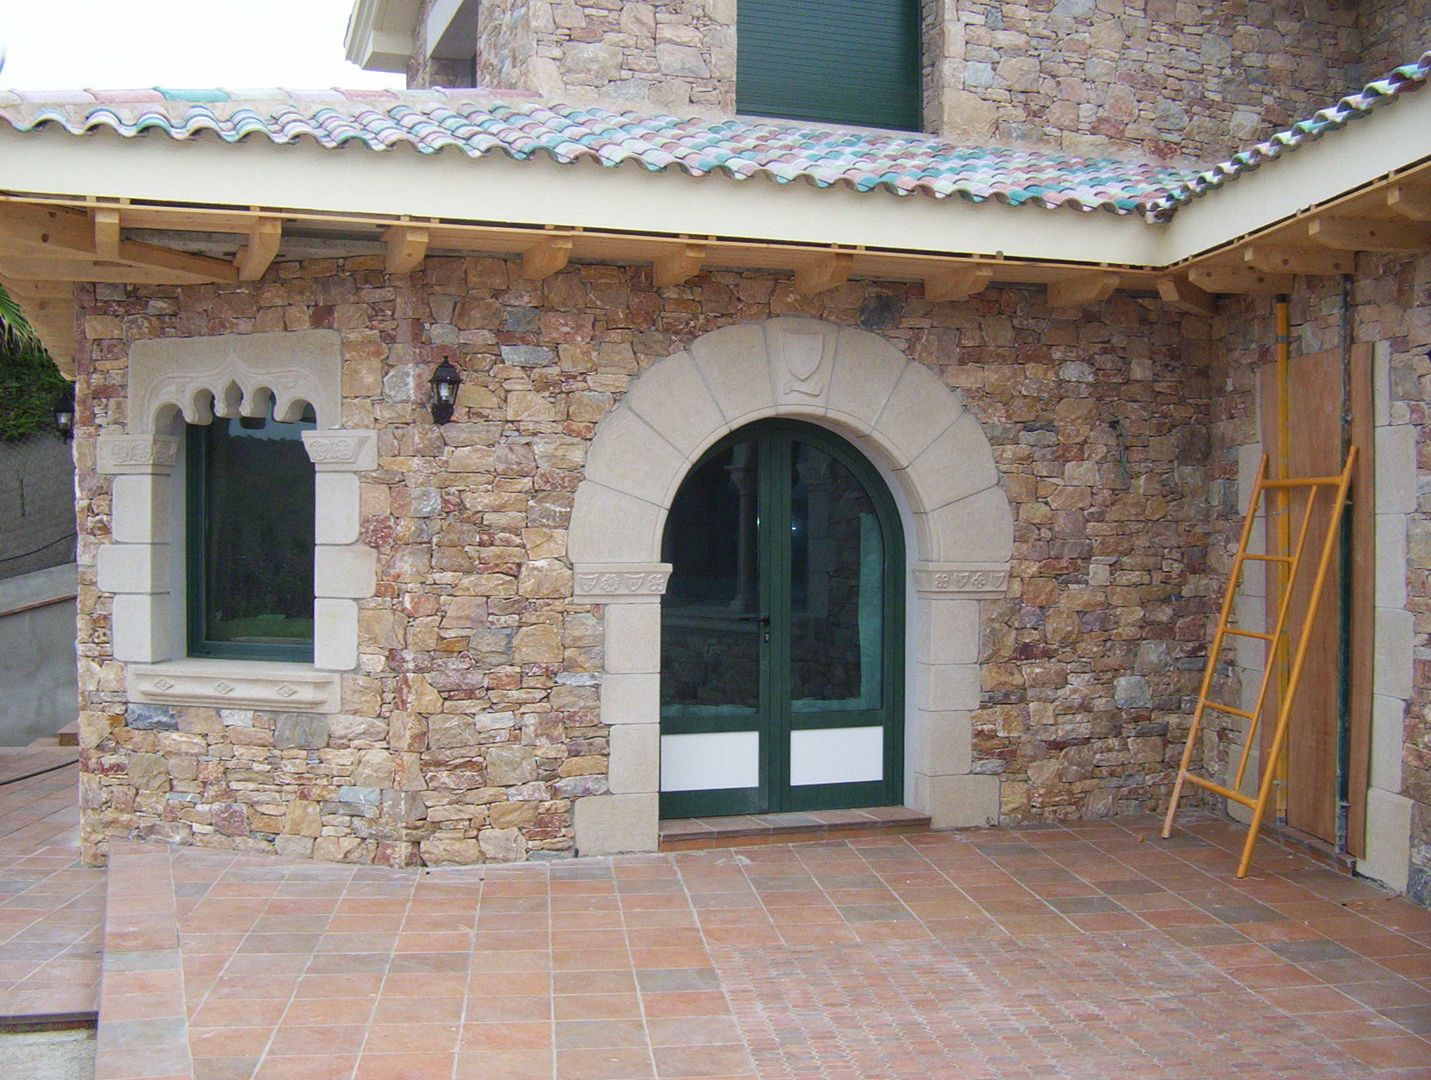 Casa de piedra., James Rossell James Rossell Mediterranean style windows & doors.